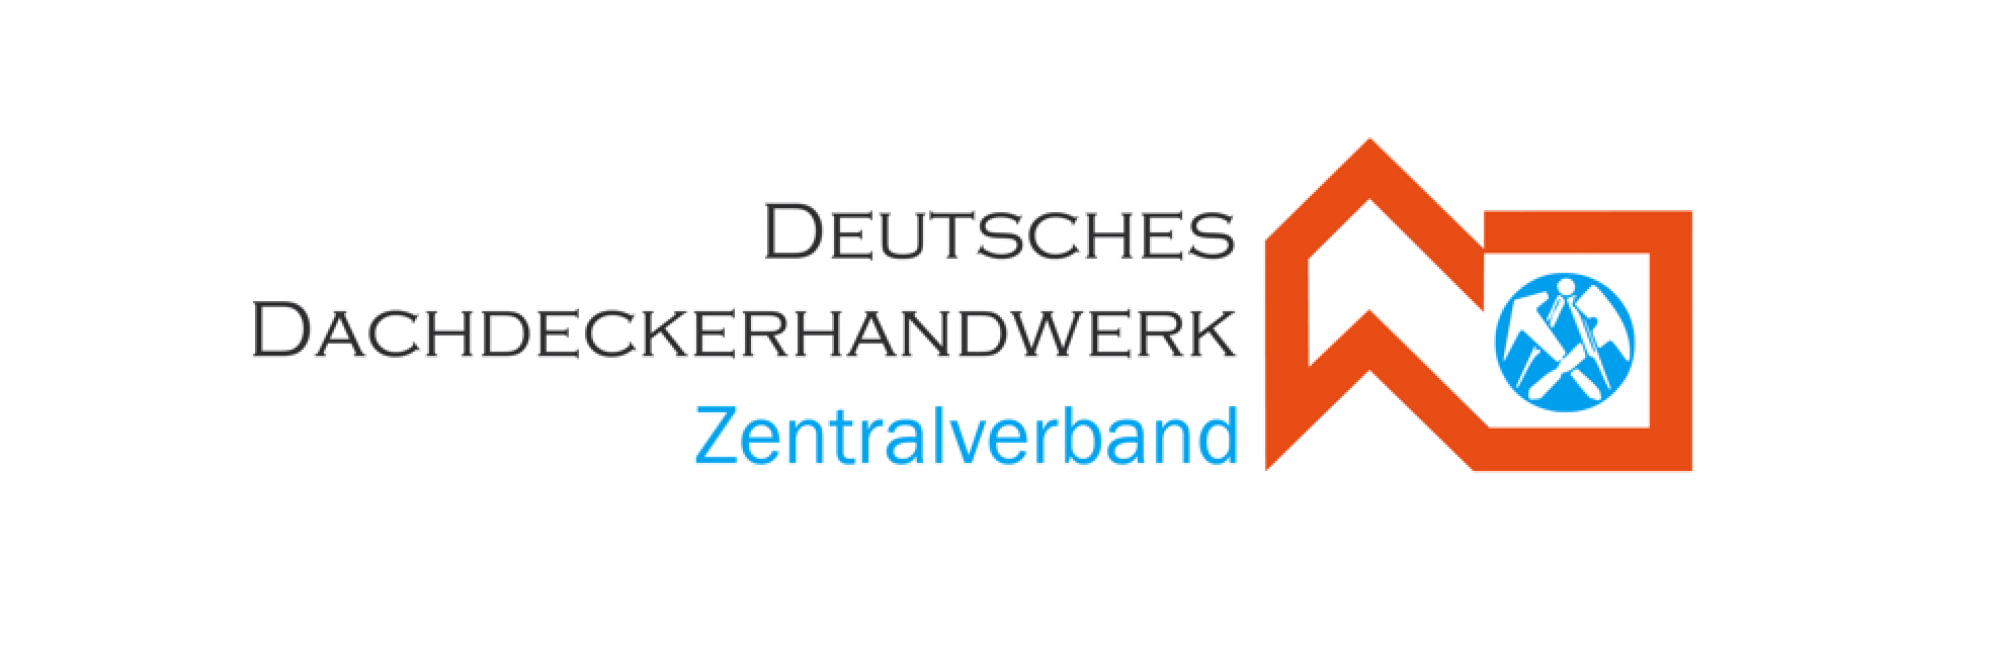 Zentralverband des Deutschen Dachdeckerhandwerks 